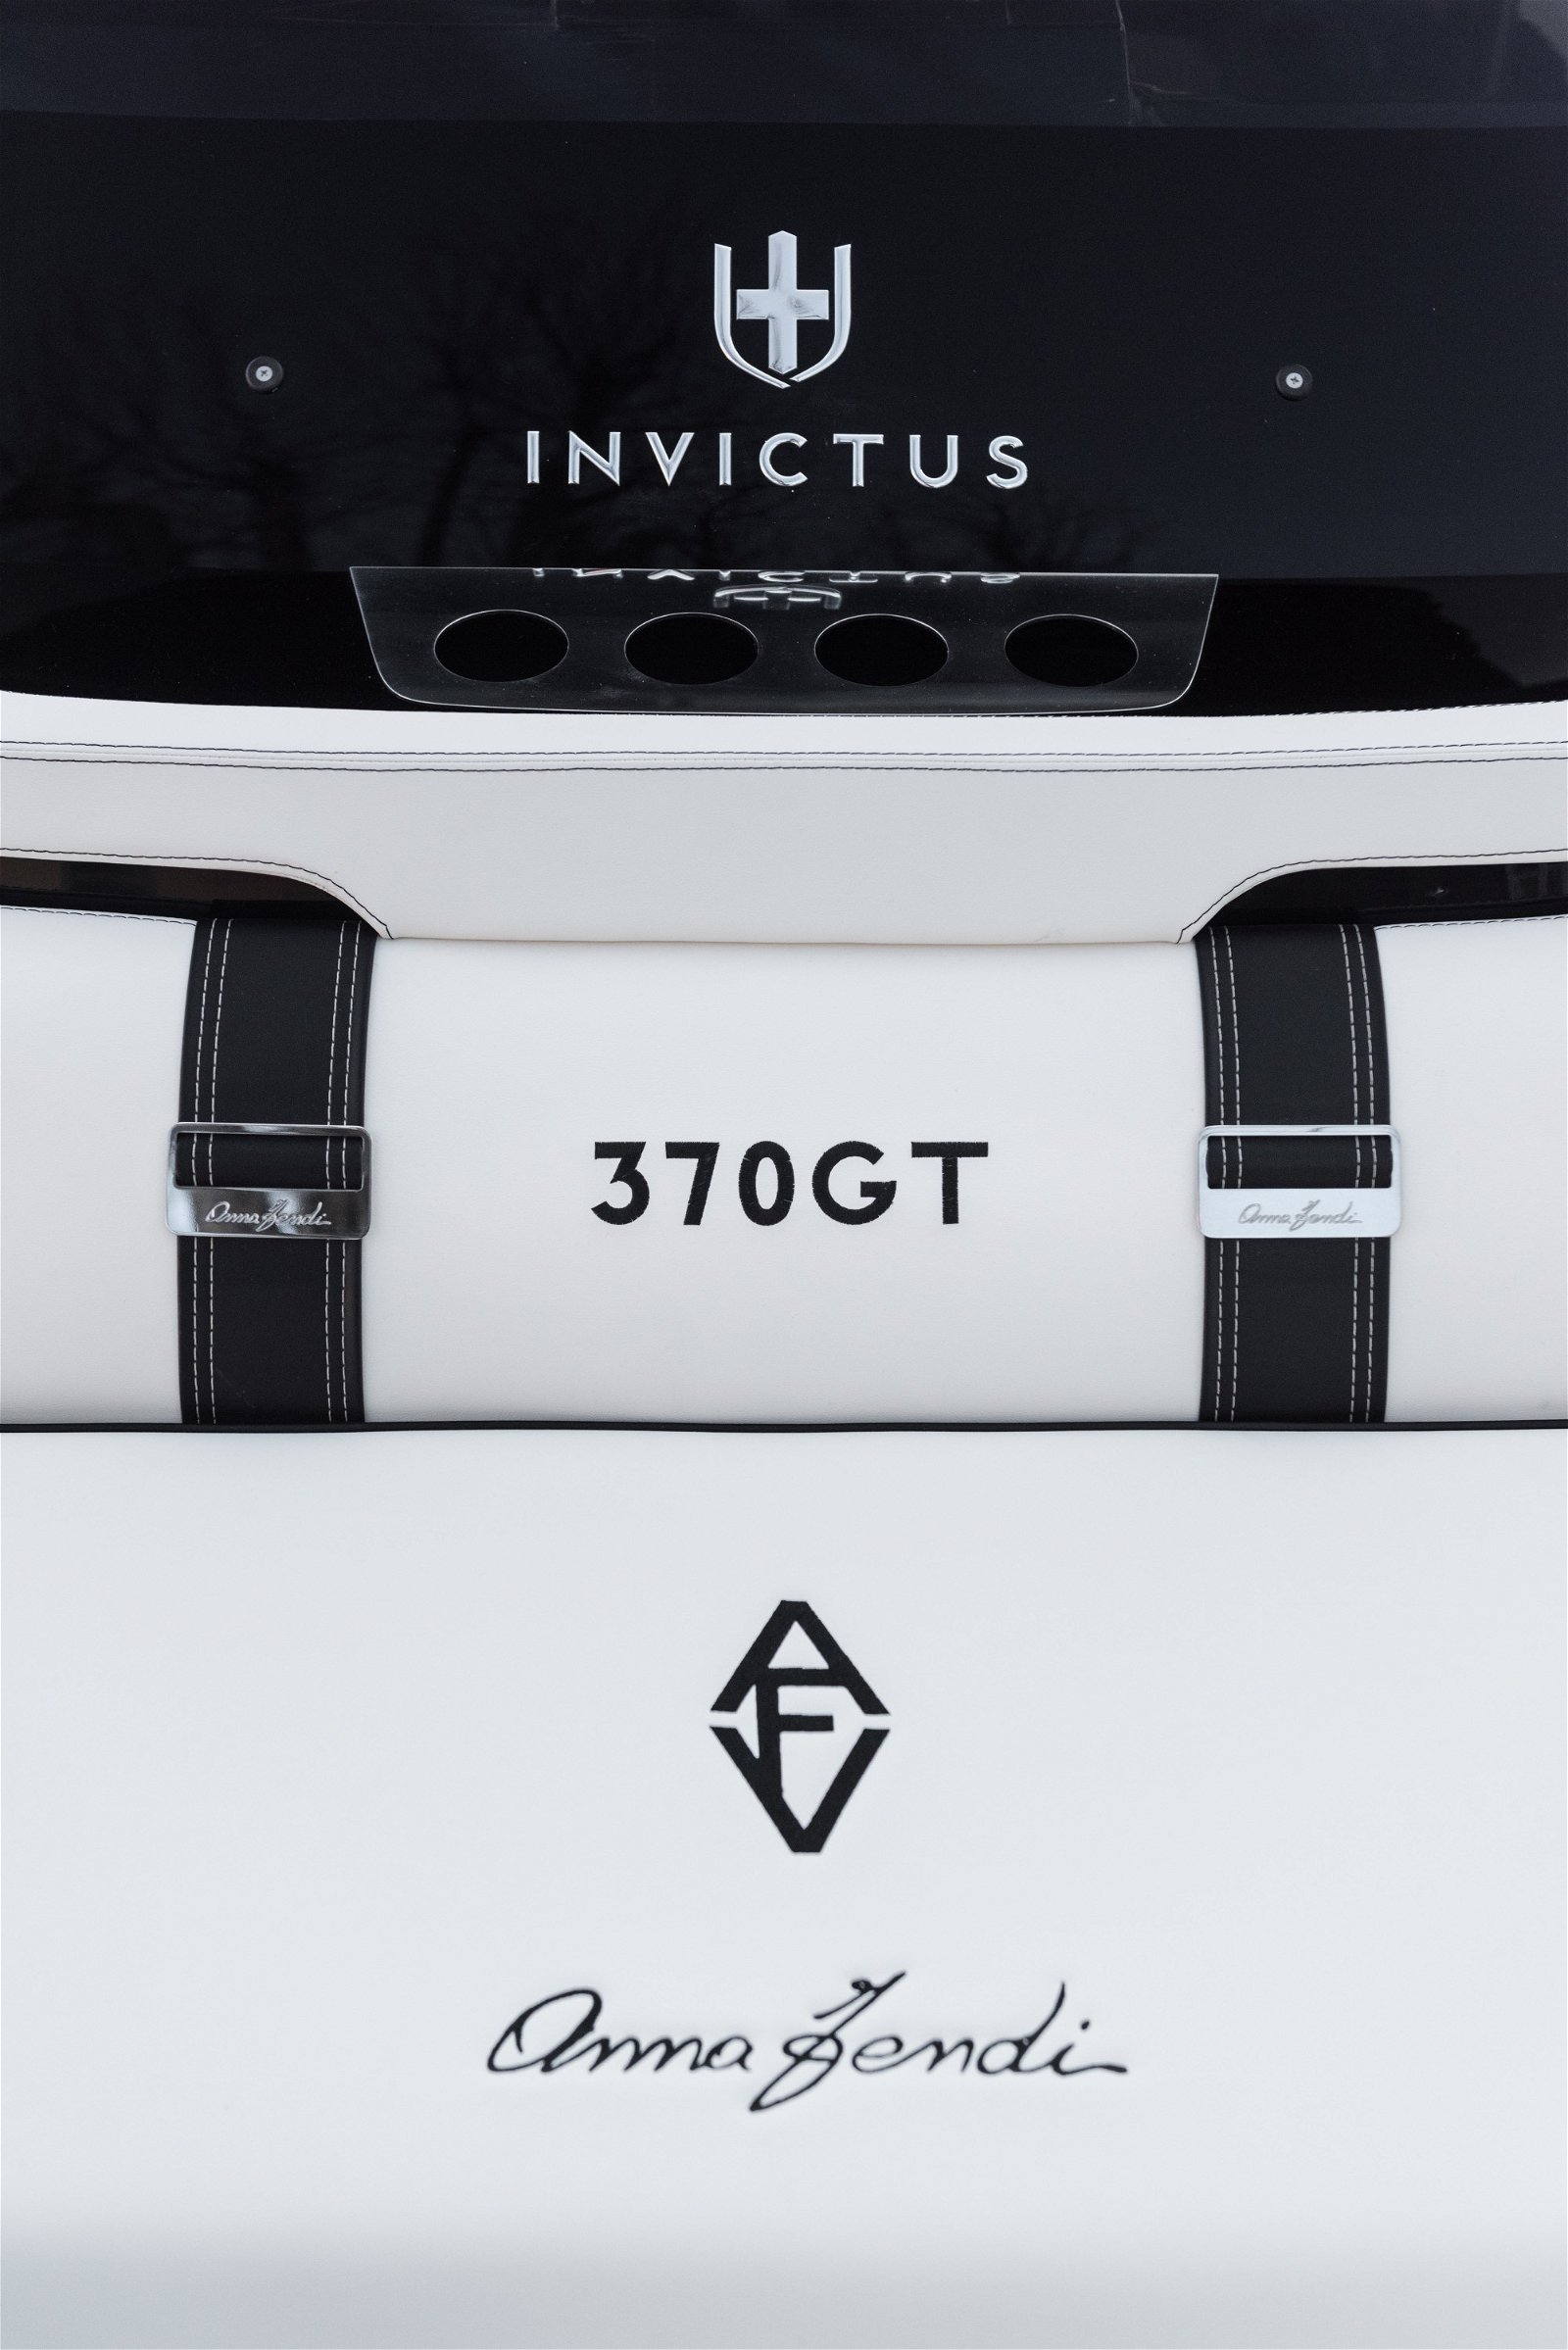 invictus-370gt-special-fendi-35